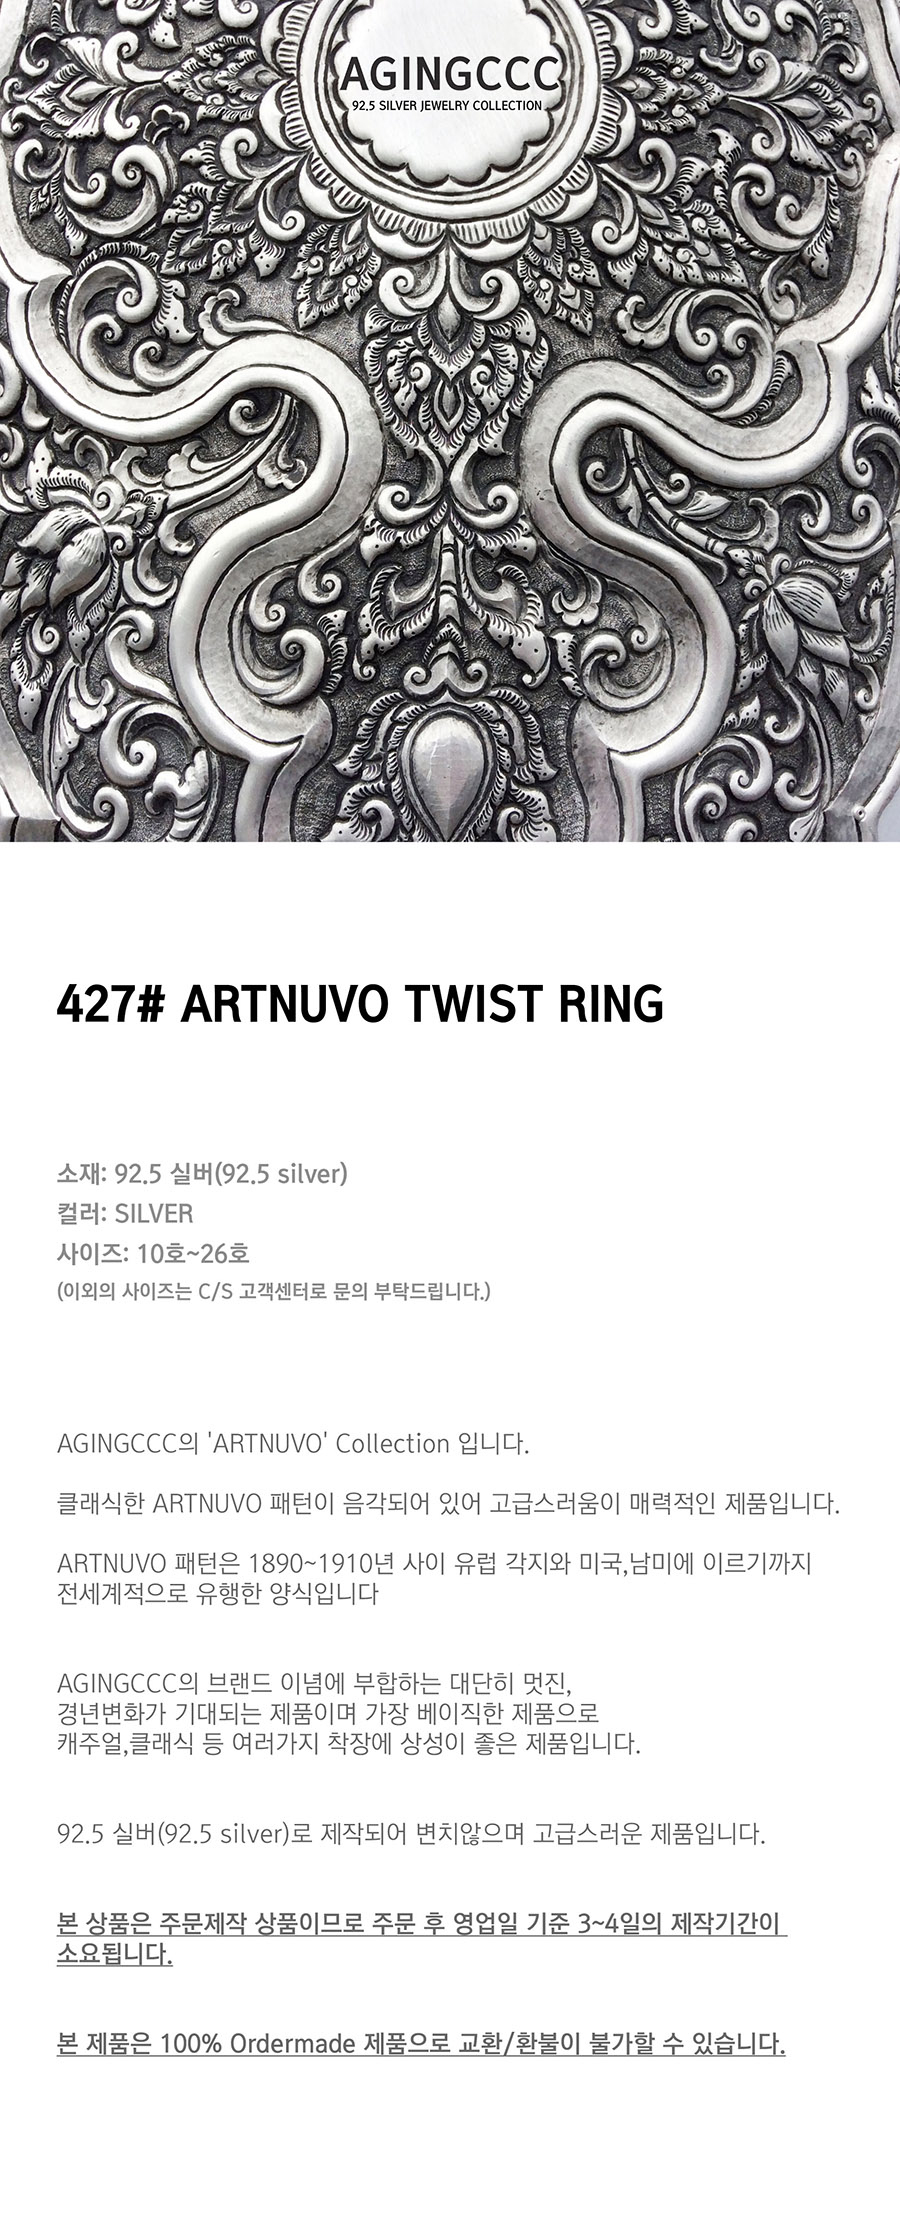 에이징씨씨씨(AGINGCCC) 427# ARTNUVO TWIST RING